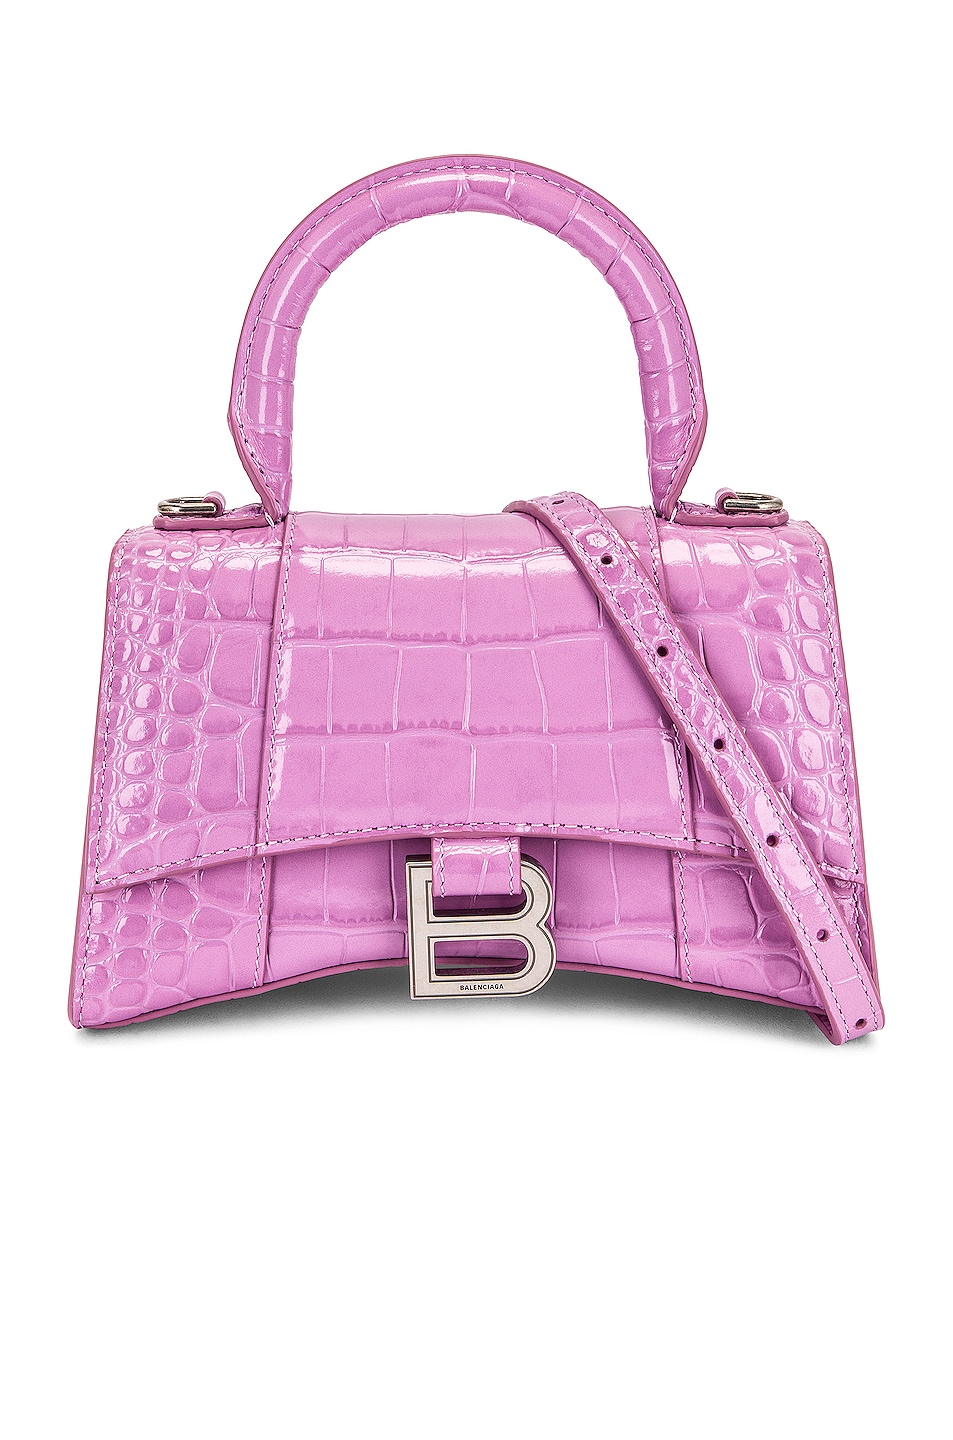 XS Hourglass Top Handle Bag in Purple